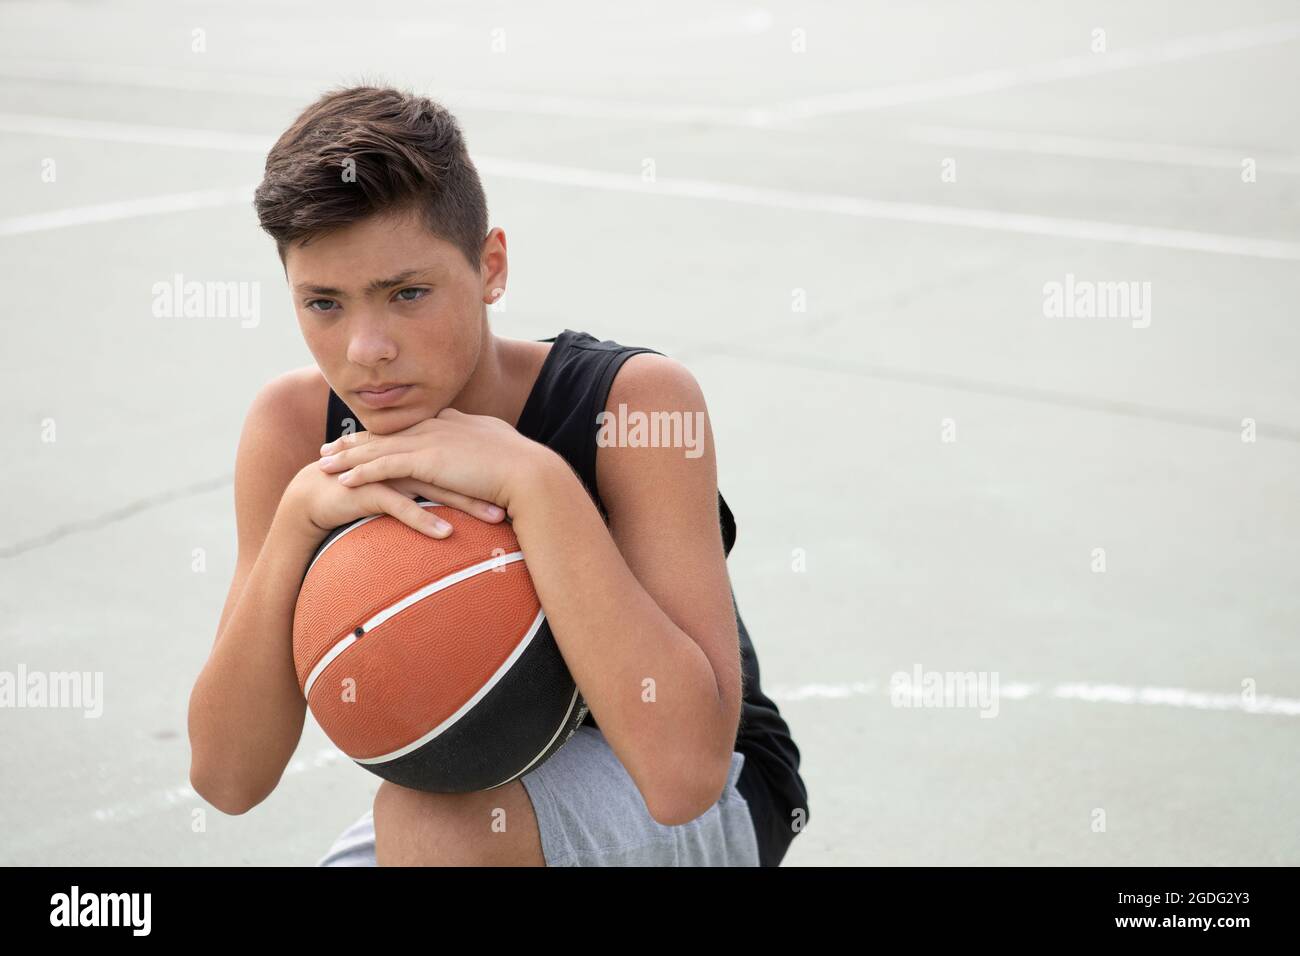 Un adolescente di sesso maschile del giocatore di basket accovacciato con la palla sul campo di pallacanestro, ritratto Foto Stock